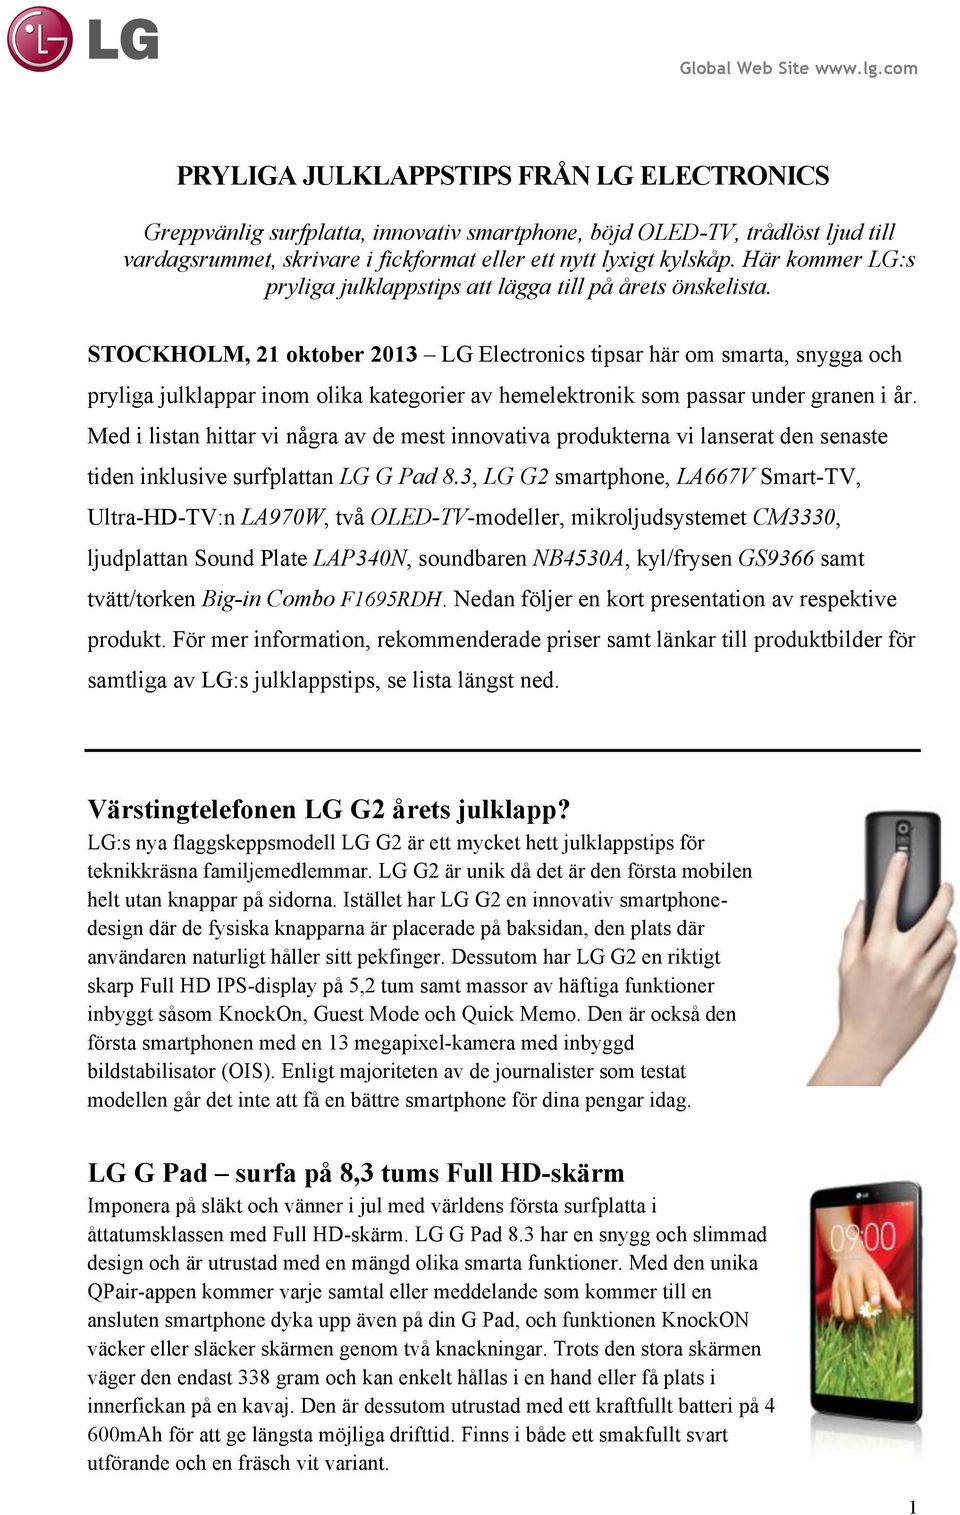 STOCKHOLM, 21 oktober 2013 LG Electronics tipsar här om smarta, snygga och pryliga julklappar inom olika kategorier av hemelektronik som passar under granen i år.